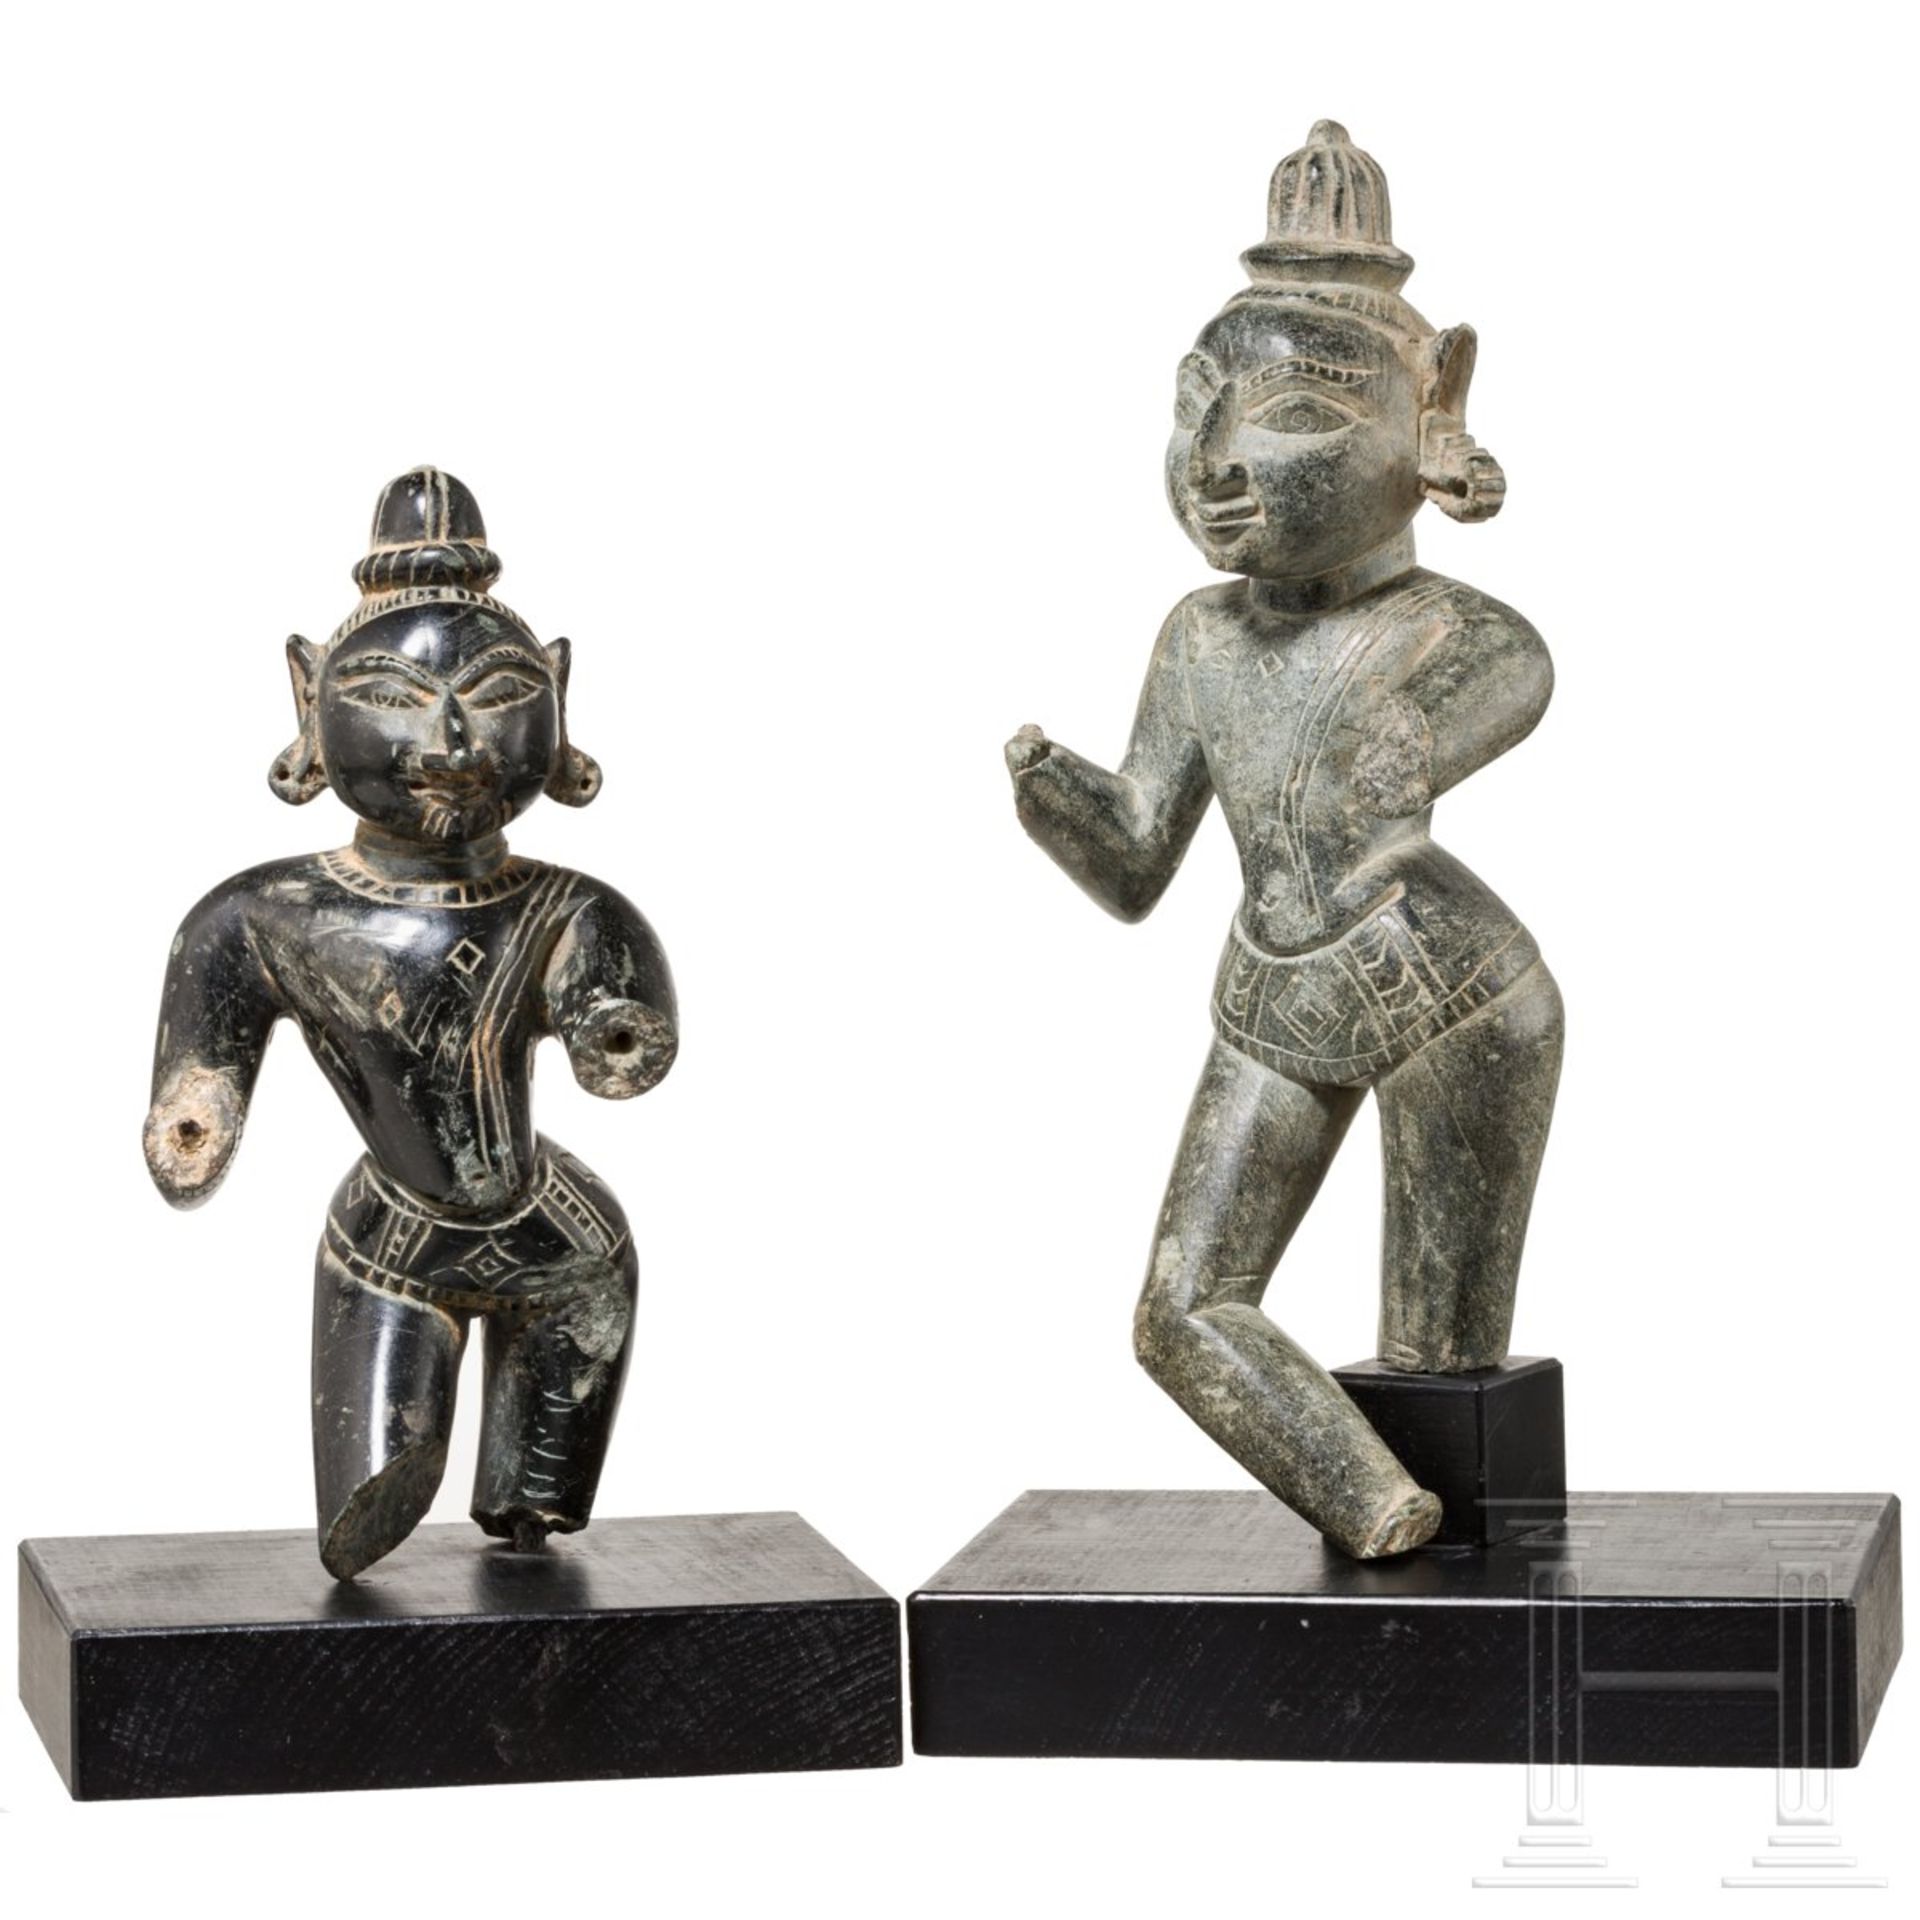 Zwei Skulpturen von Gottheiten, Indien, 19. Jhdt.Schiefer und schwarzer Basalt. Vollplastisch